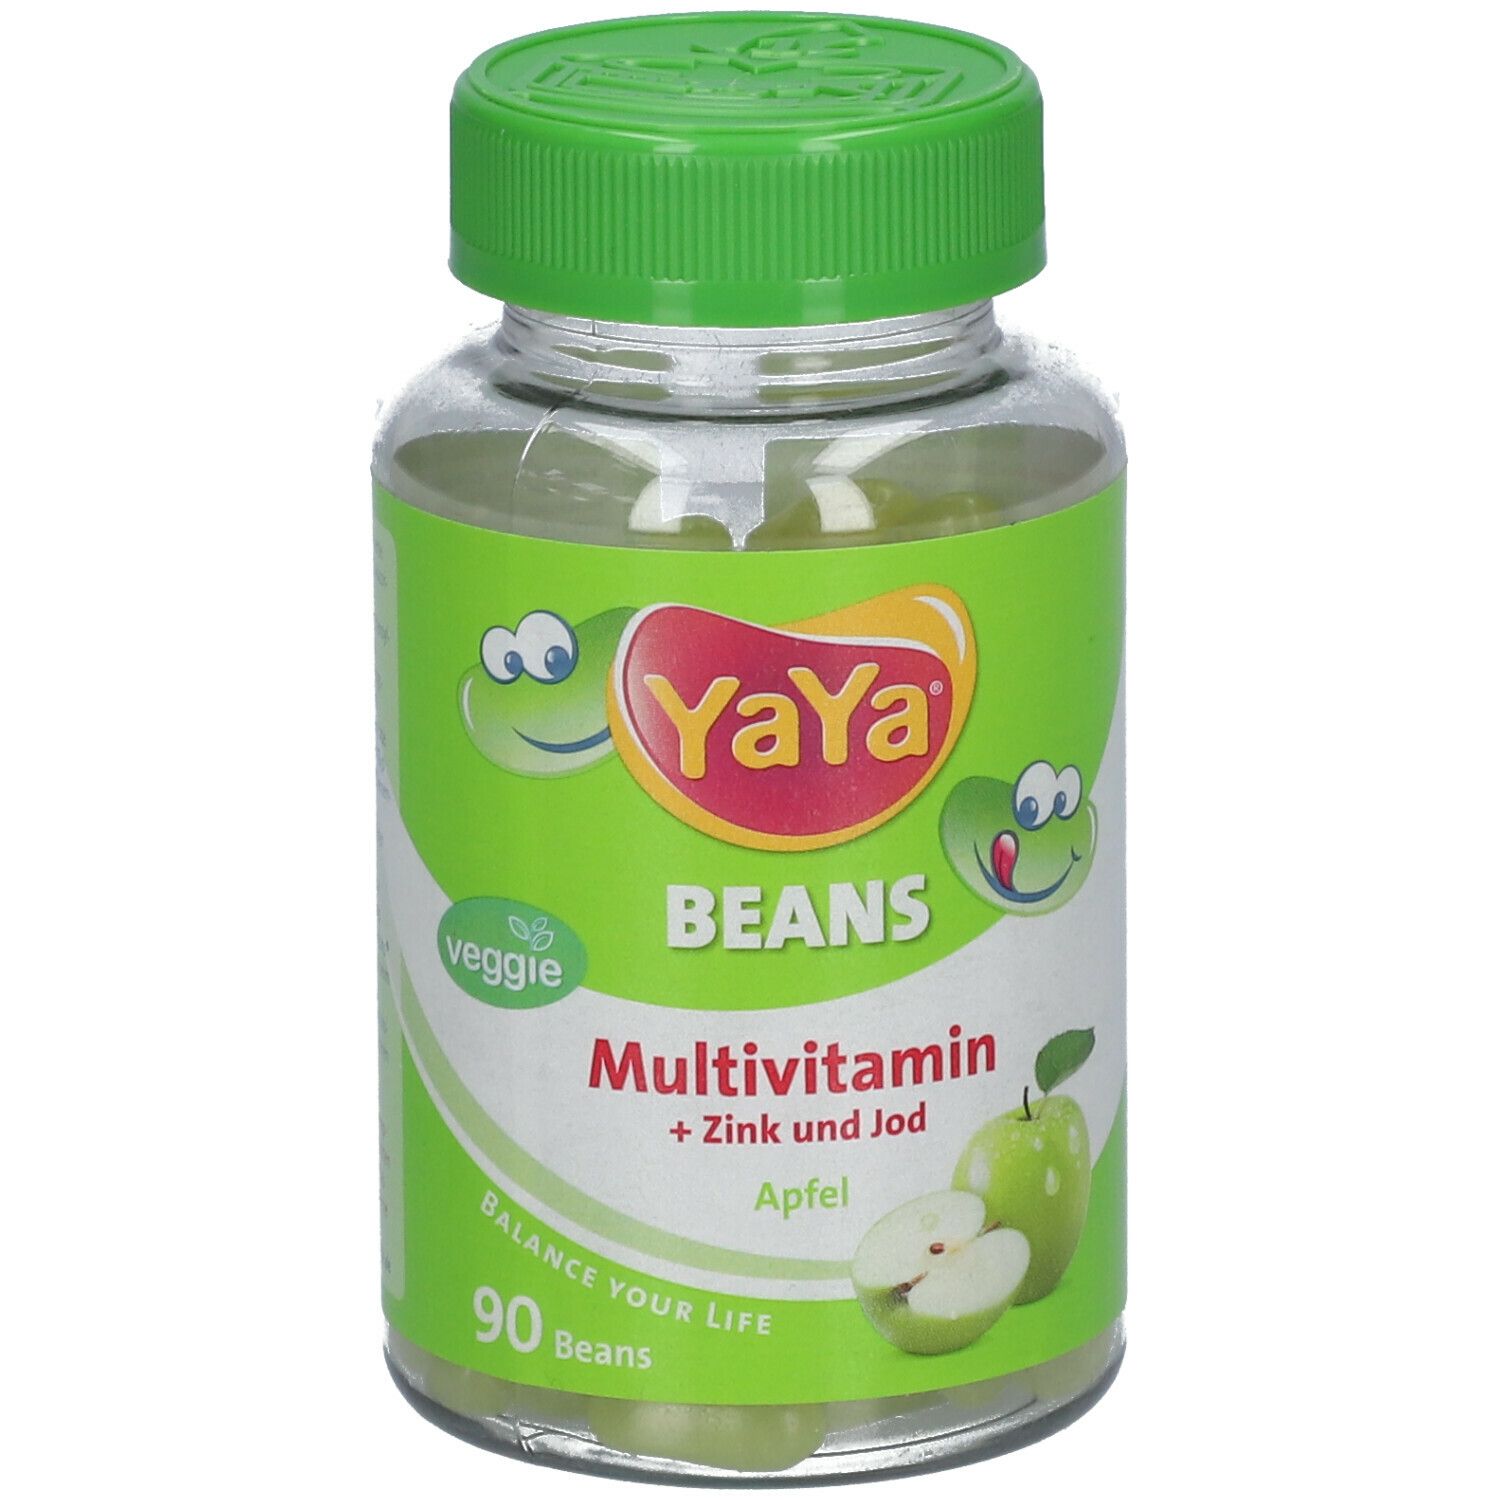 YaYa® Beans Multivitamin + Zink und Jod Apfel